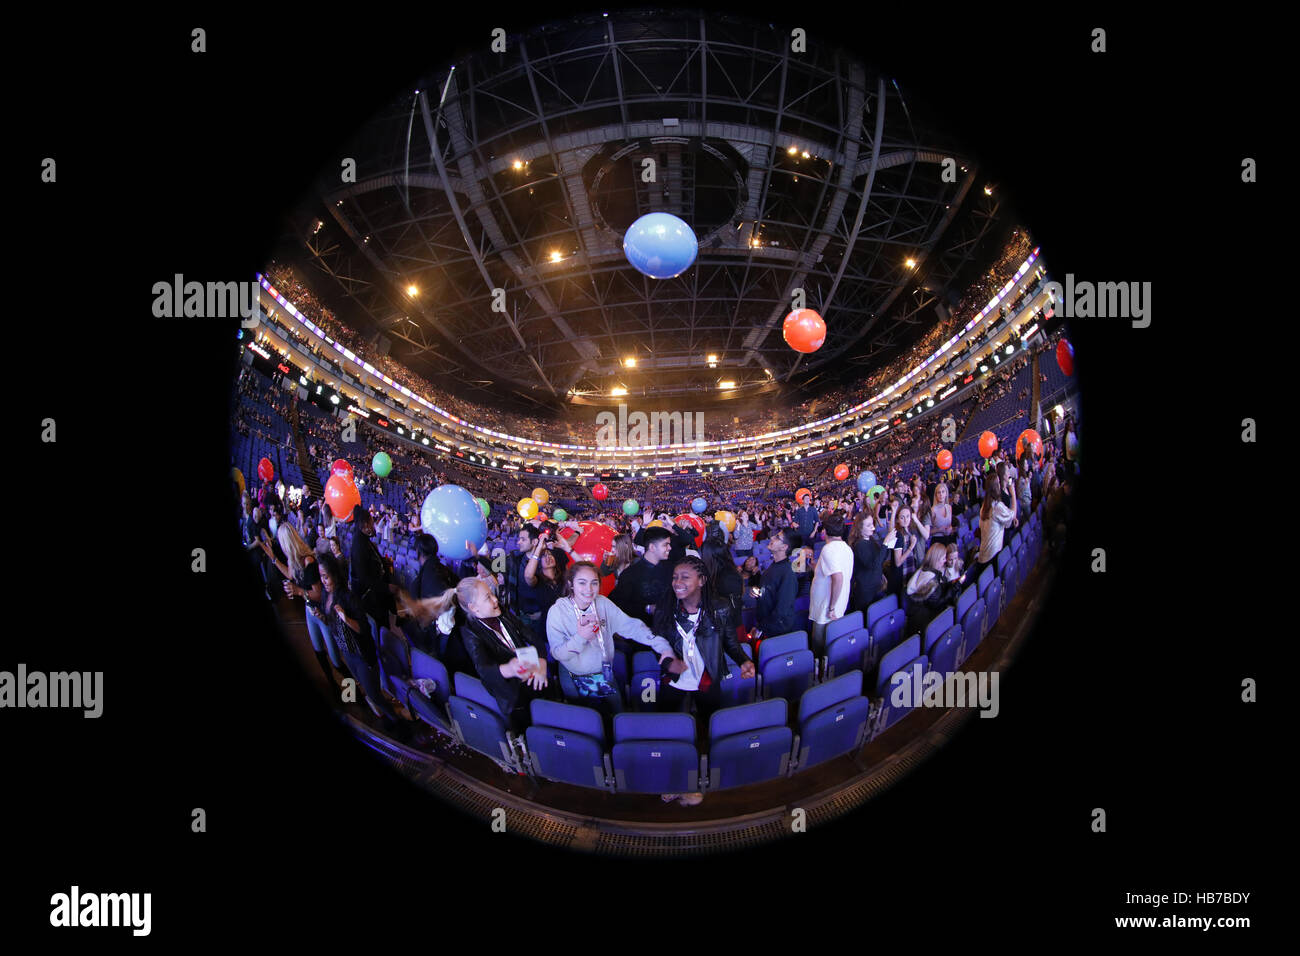 Eine Gesamtansicht des Publikums während der Hauptstadt Jingle Bell Ball mit Coca-Cola in der Londoner O2 Arena. PRESSEVERBAND Foto. Bild Datum: Samstag, 3. Dezember 2016. Bildnachweis sollte lauten: Yui Mok/PA Wire Stockfoto